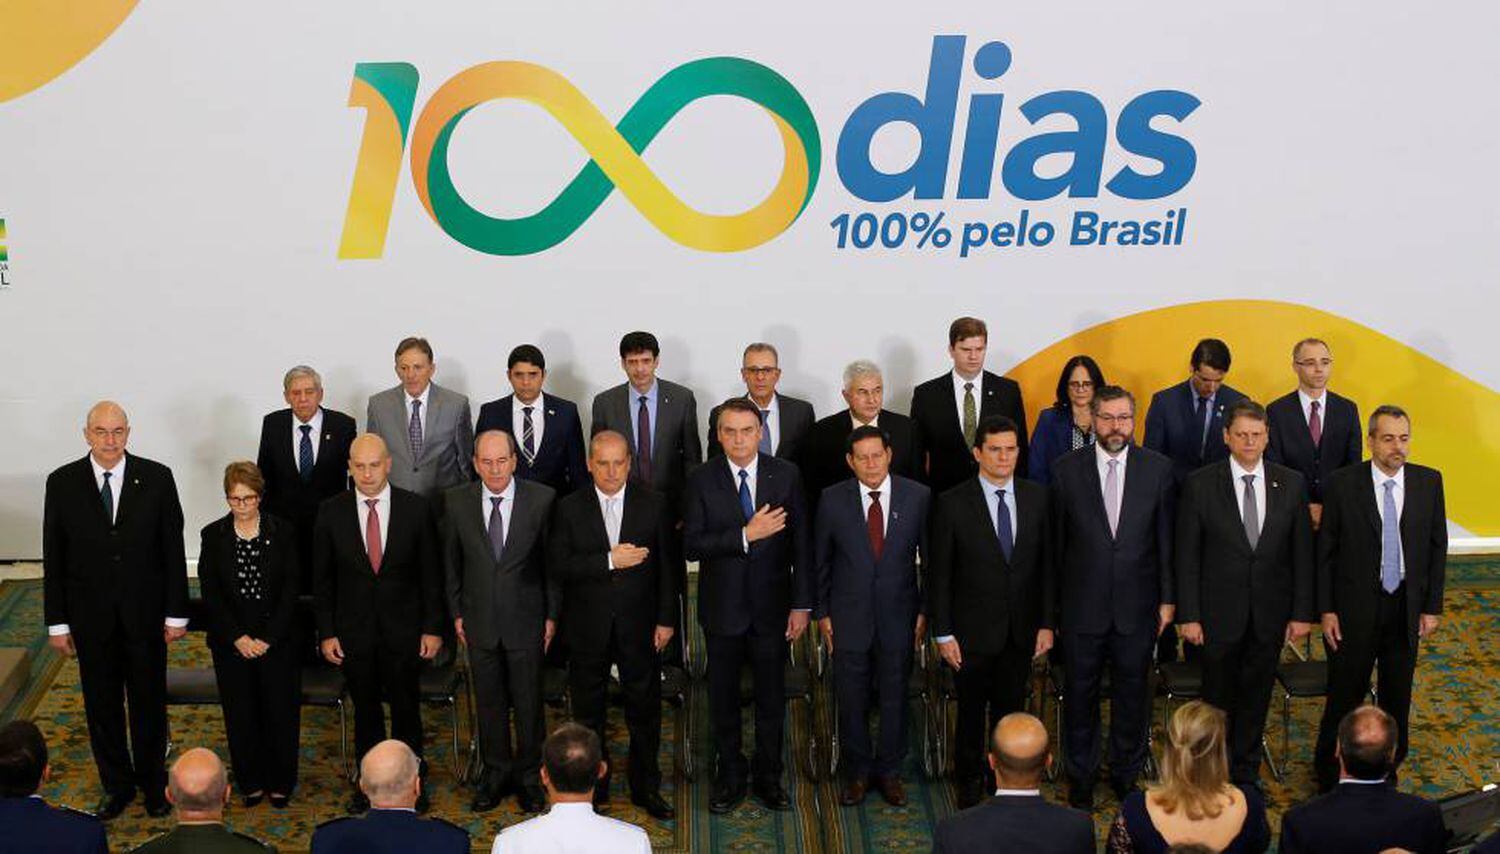 Bolsonaro posa ao lado de sua equipe ministerial no evento que celebrou 100 dias de Governo, em Brasília, na última quinta-feira.